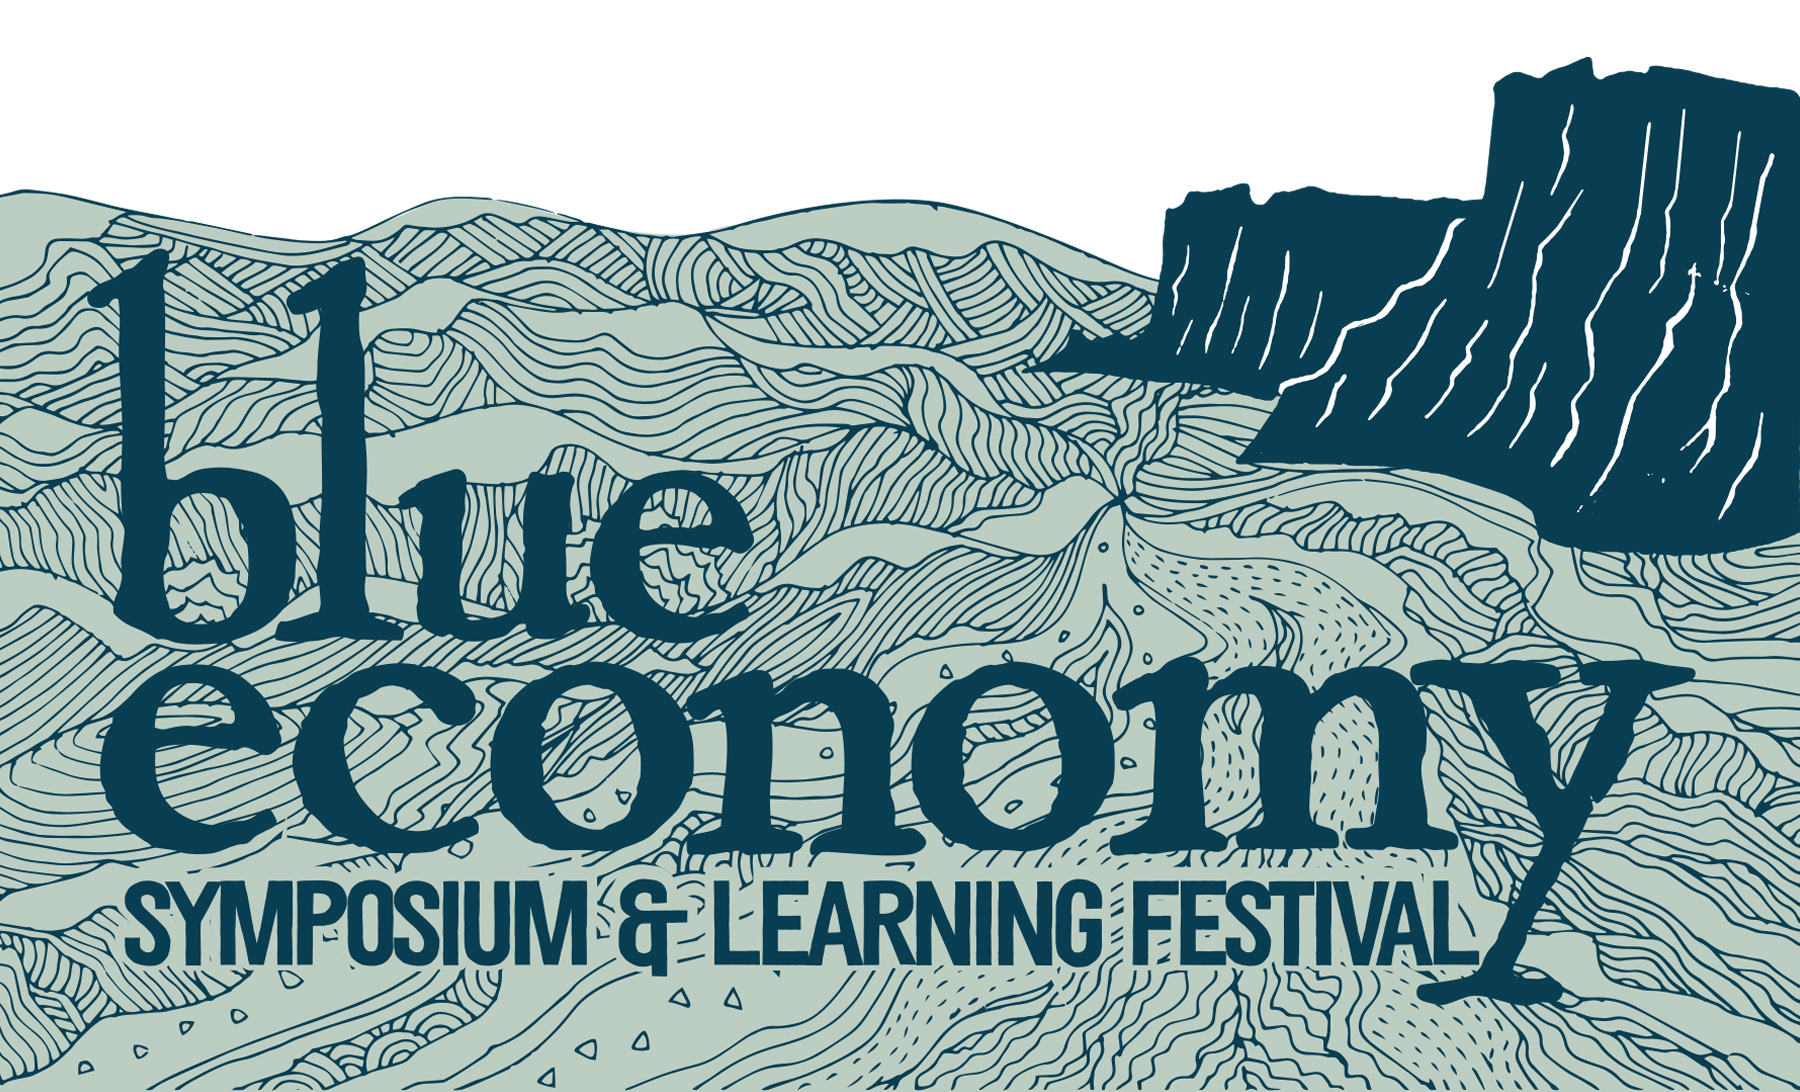 Blue Economy Learning Festival - Fort Bragg